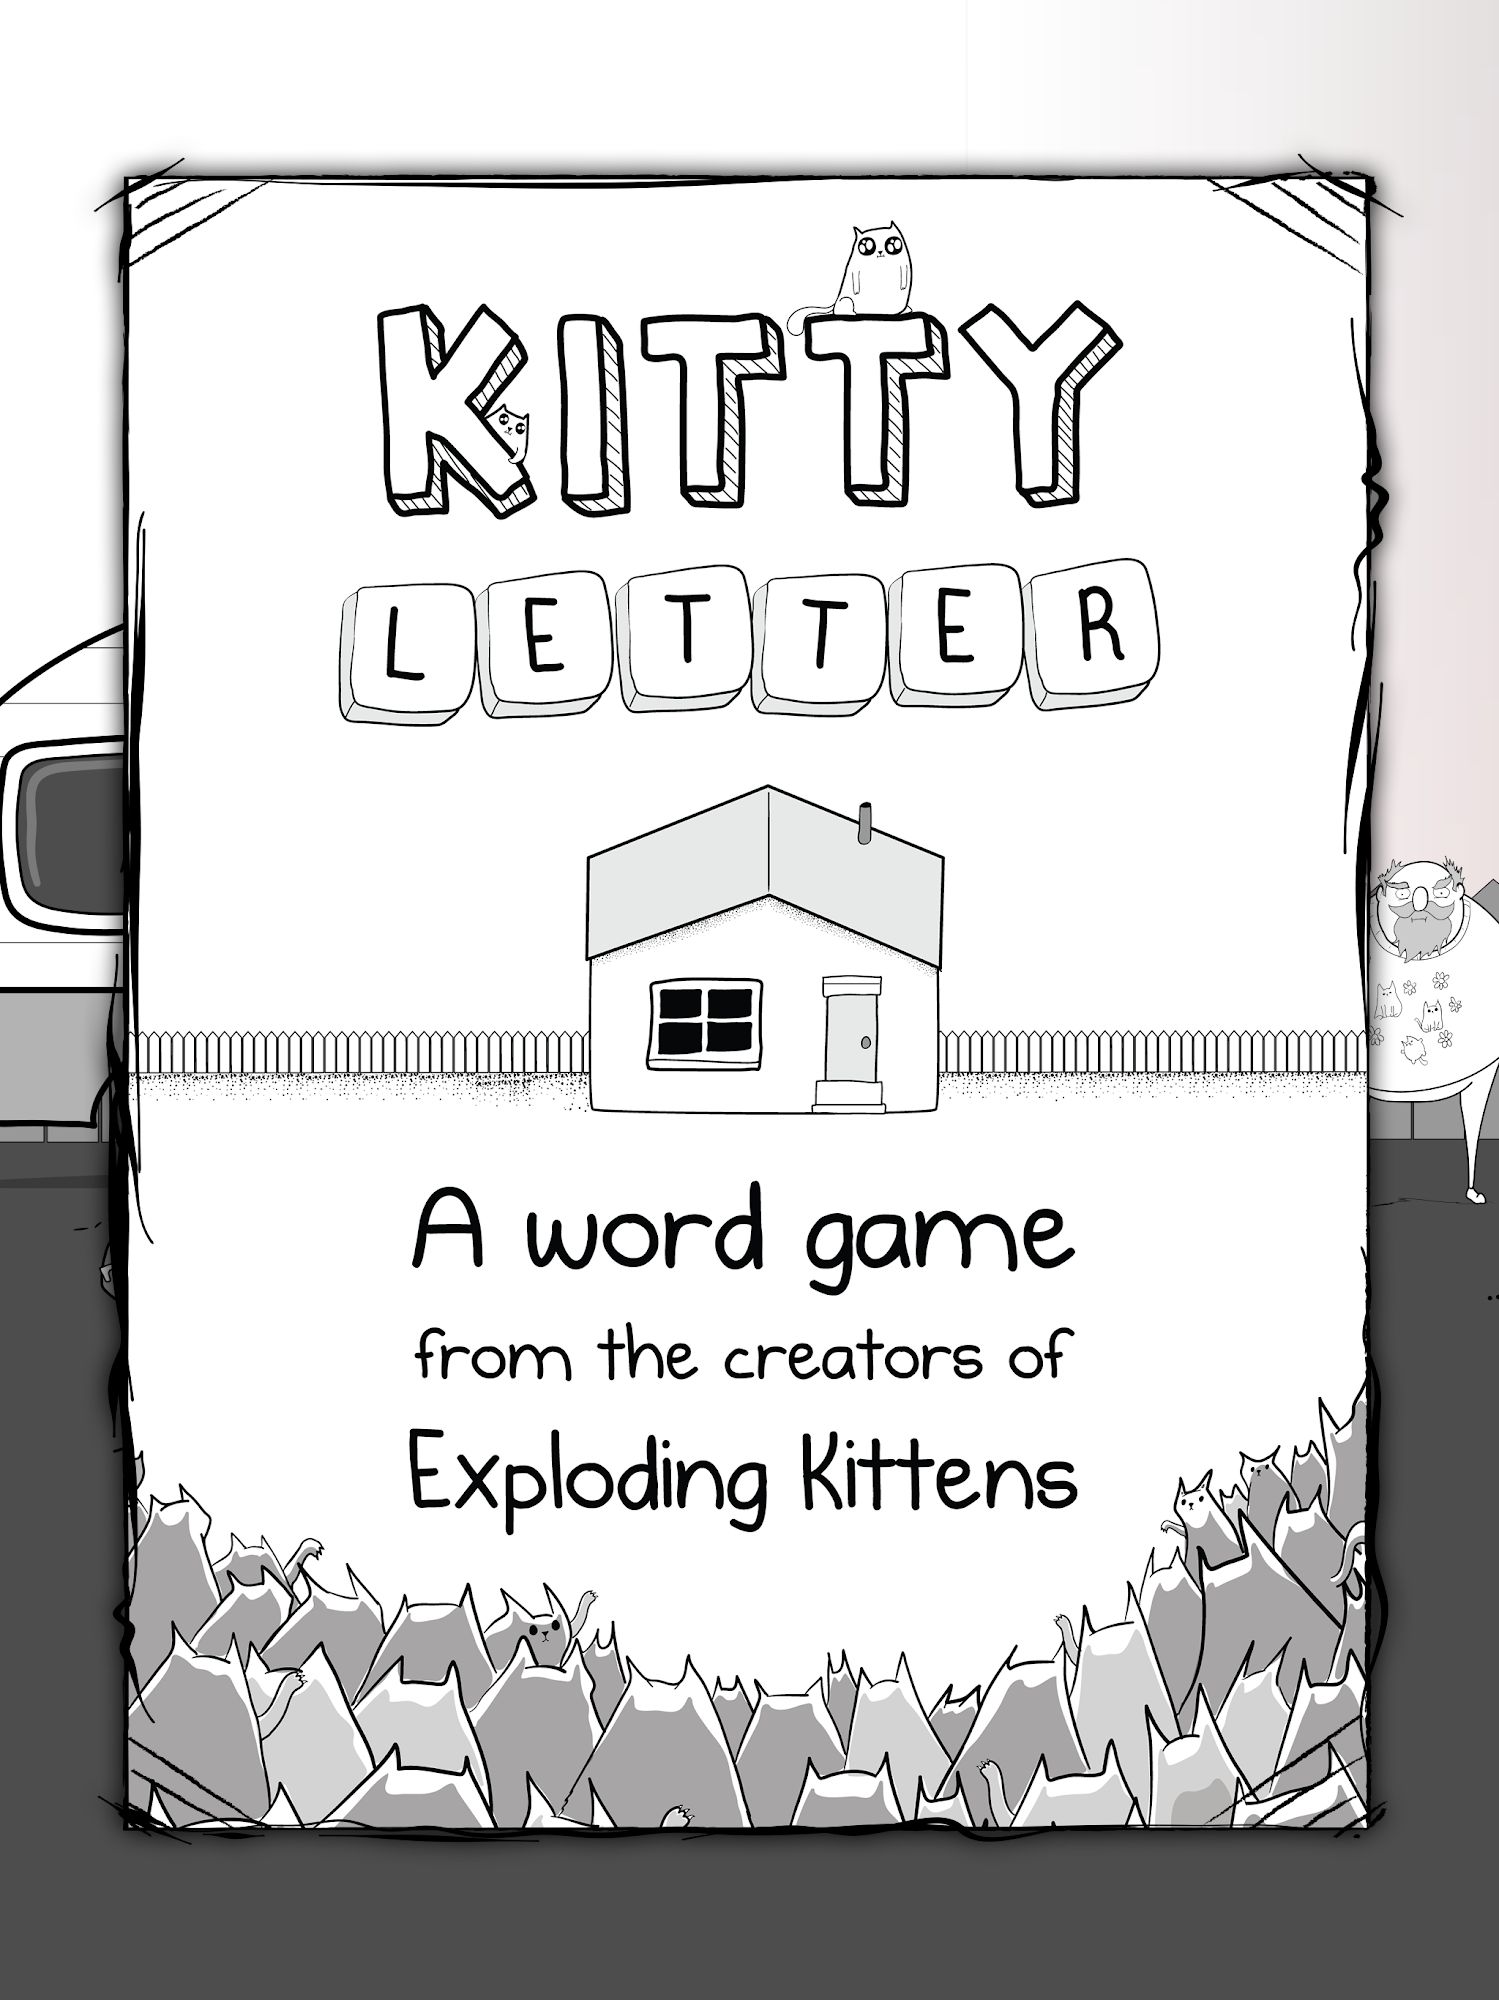 Télécharger Kitty Letter pour Android gratuit.